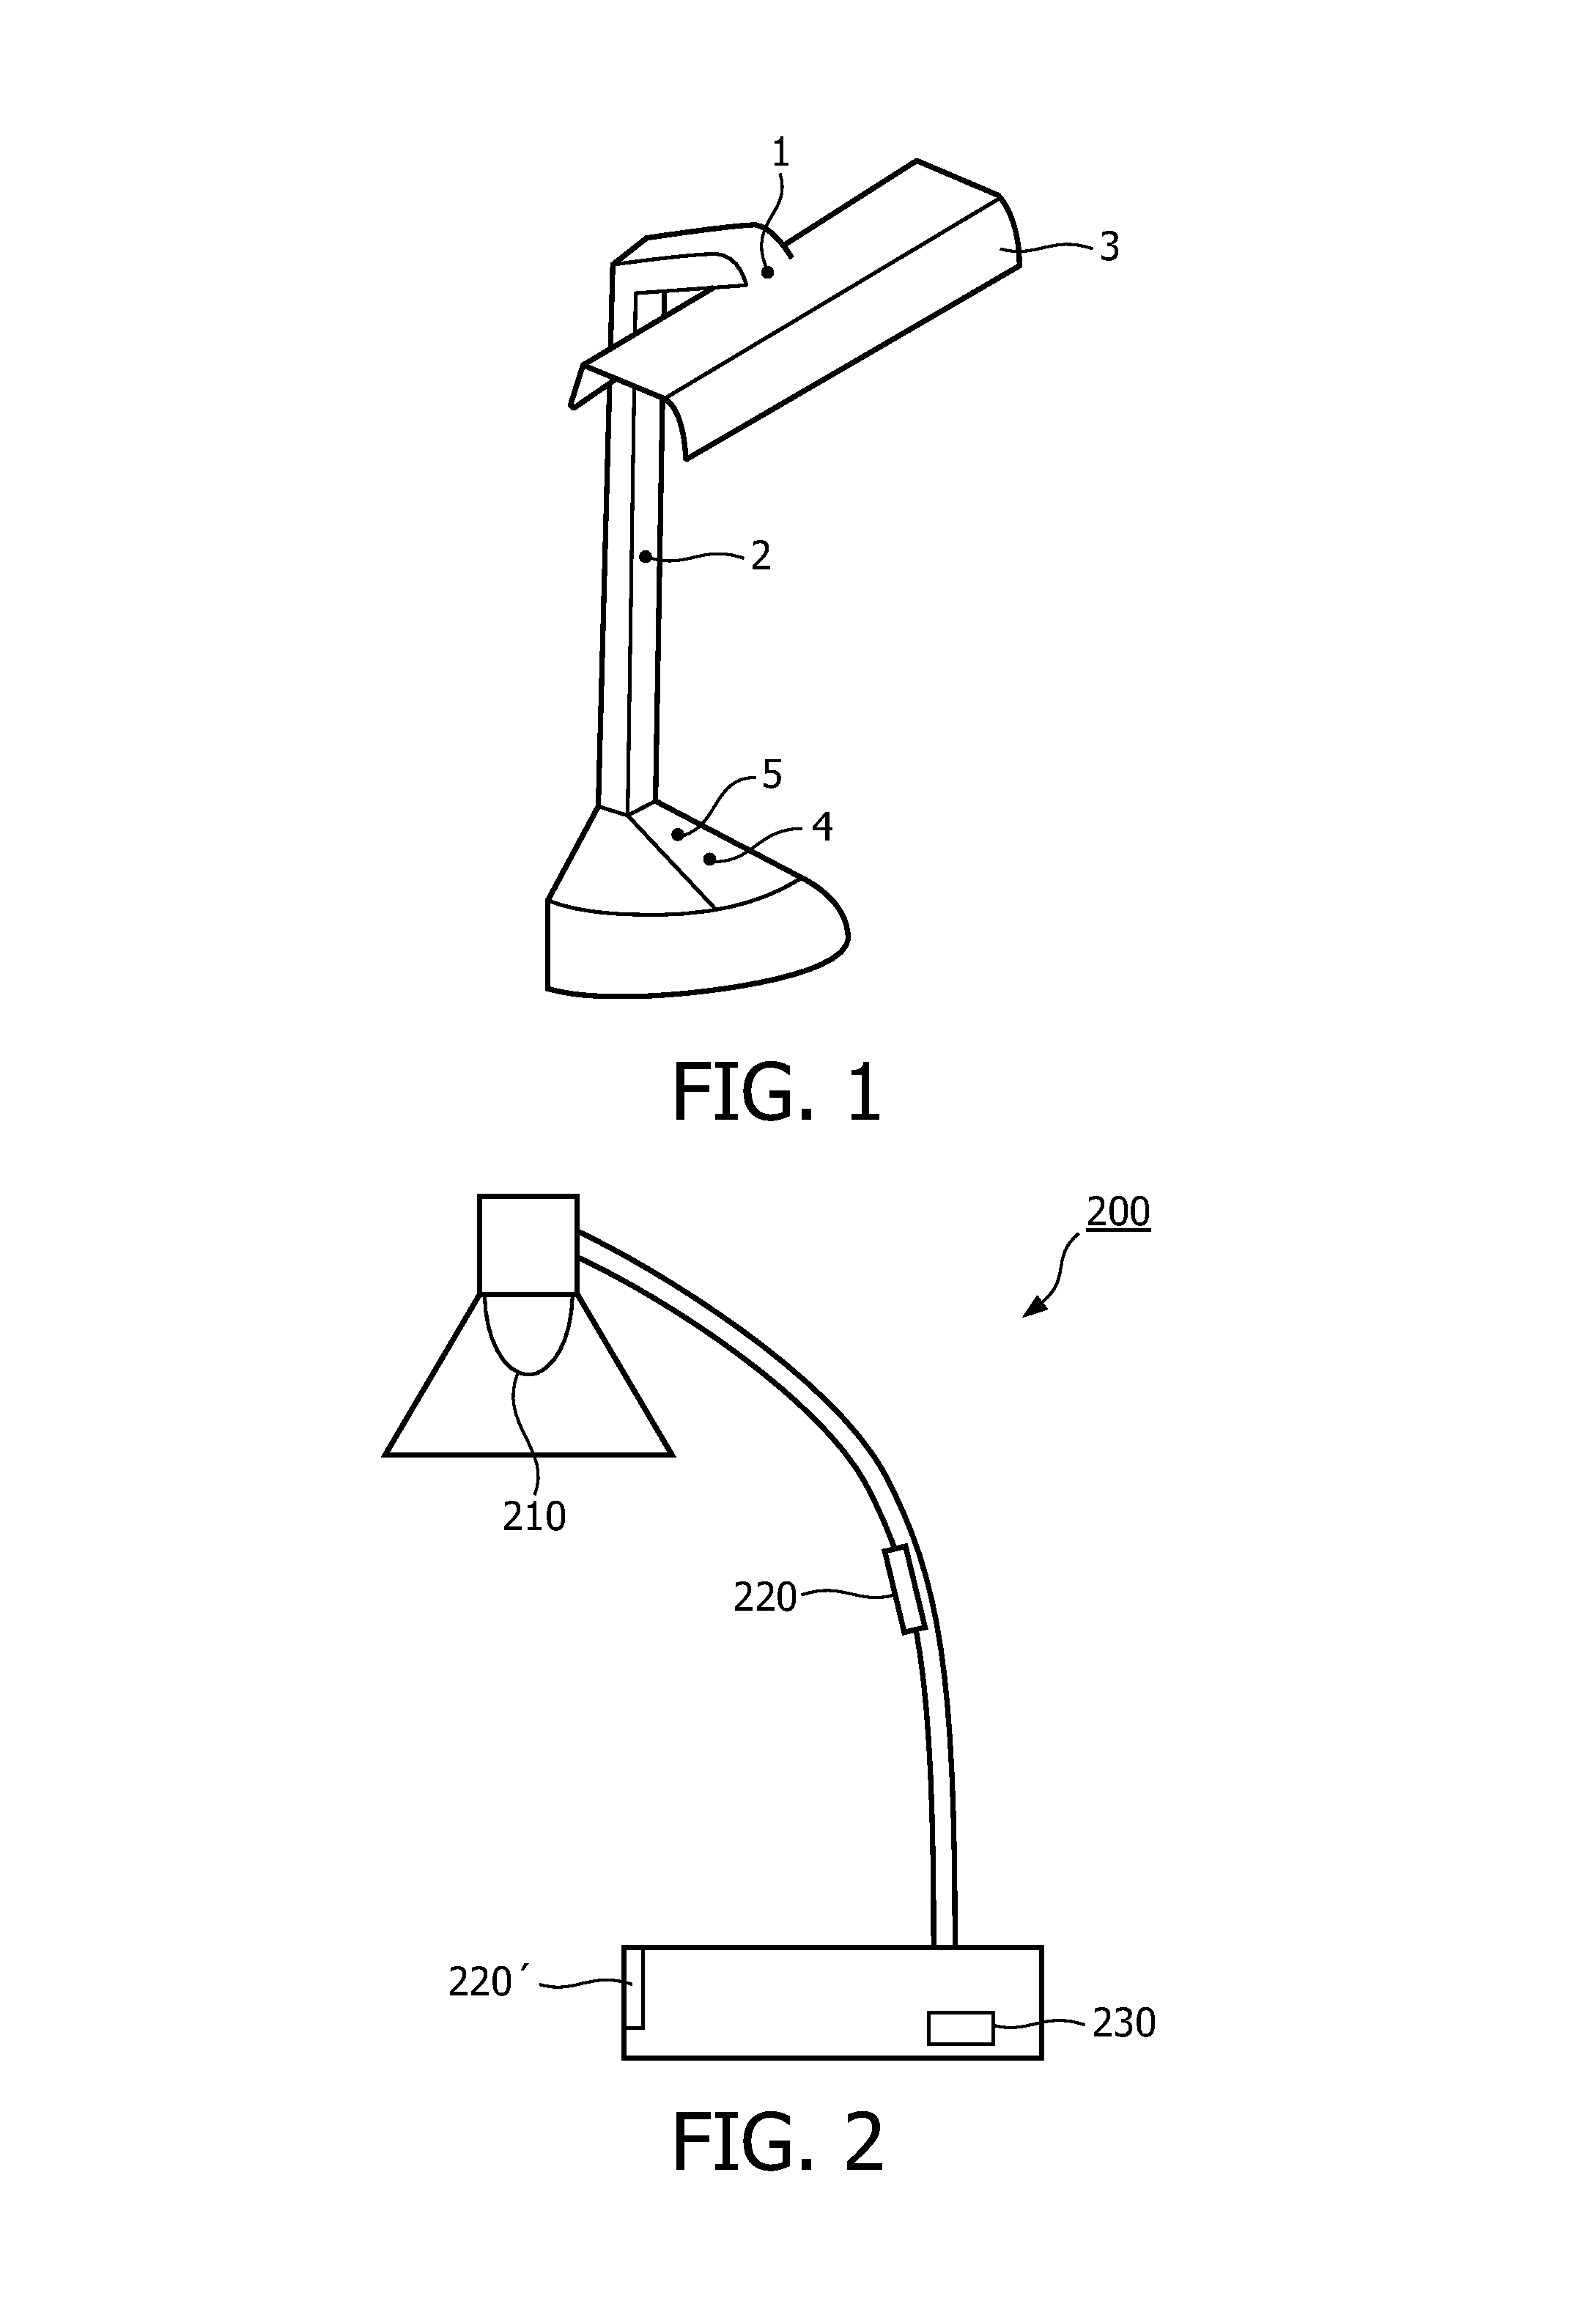 Illumination apparatus and method